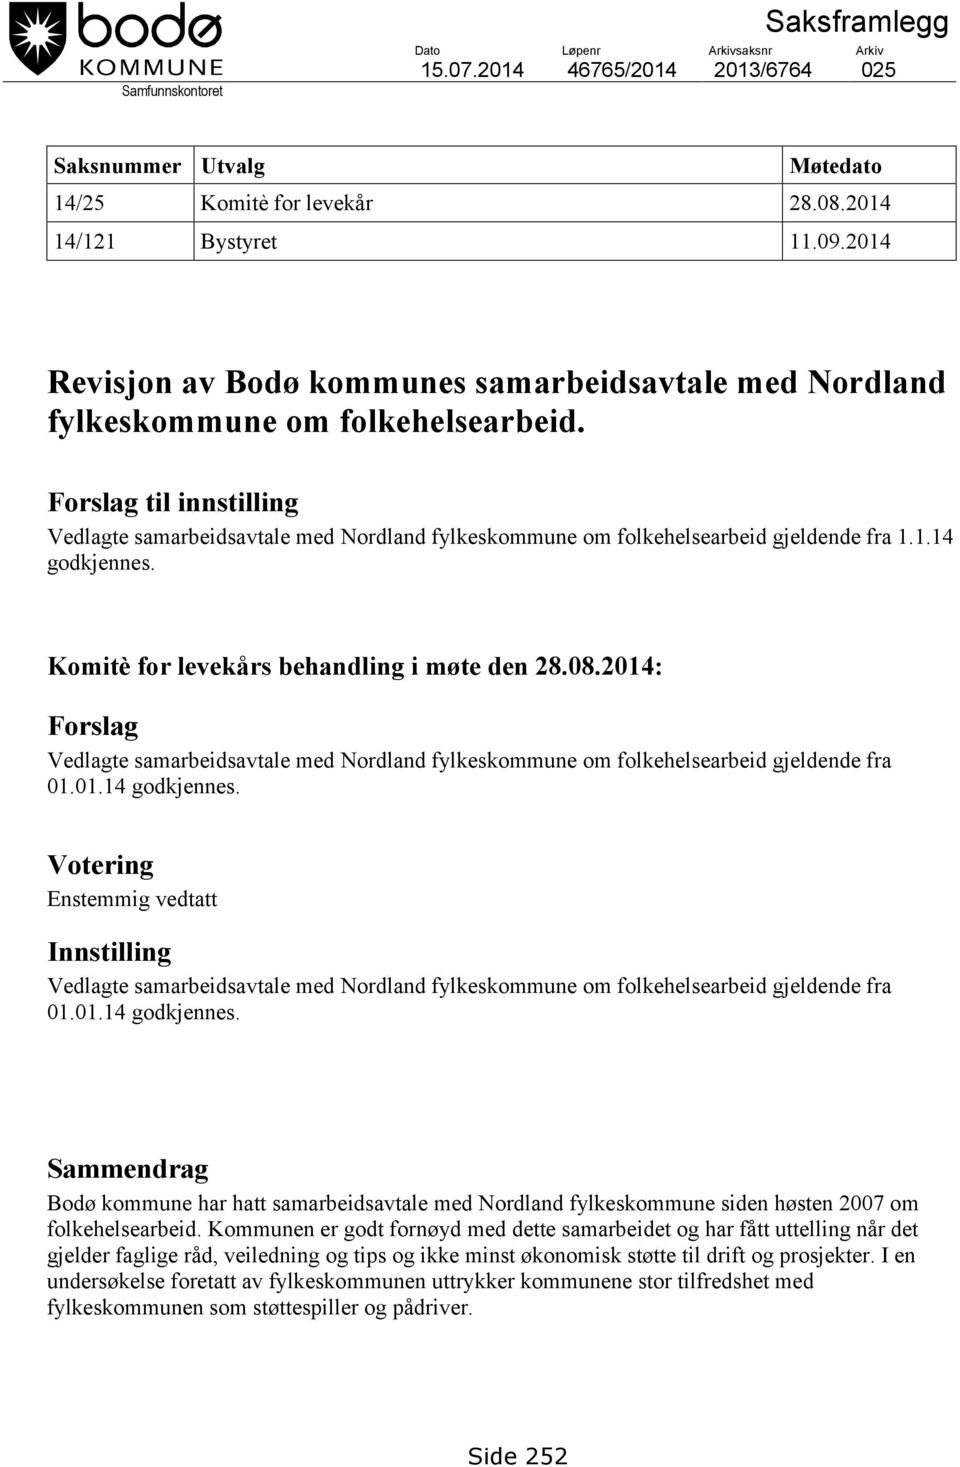 Forslag til innstilling Vedlagte samarbeidsavtale med Nordland fylkeskommune om folkehelsearbeid gjeldende fra 1.1.14 godkjennes. Komitè for levekårs behandling i møte den 28.08.